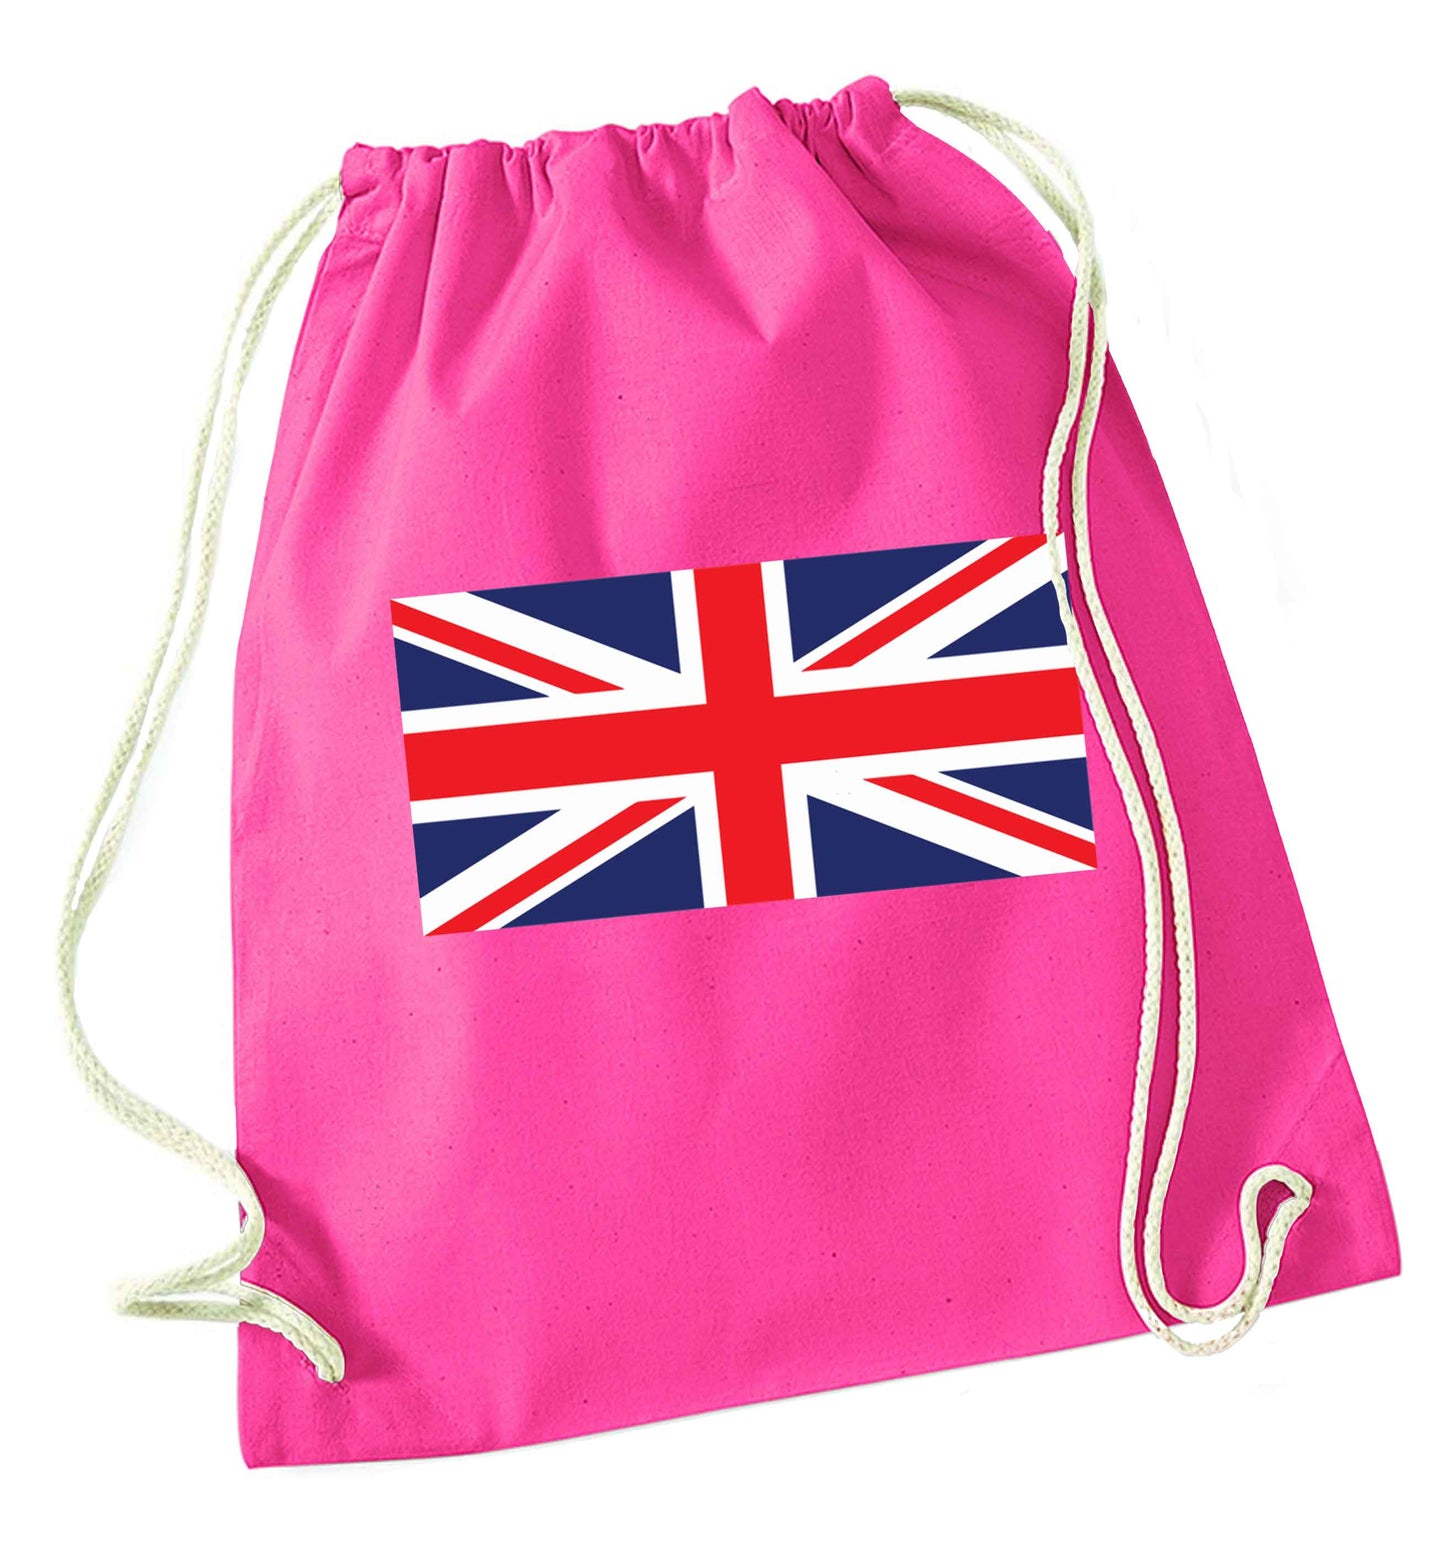 Union Jack pink drawstring bag